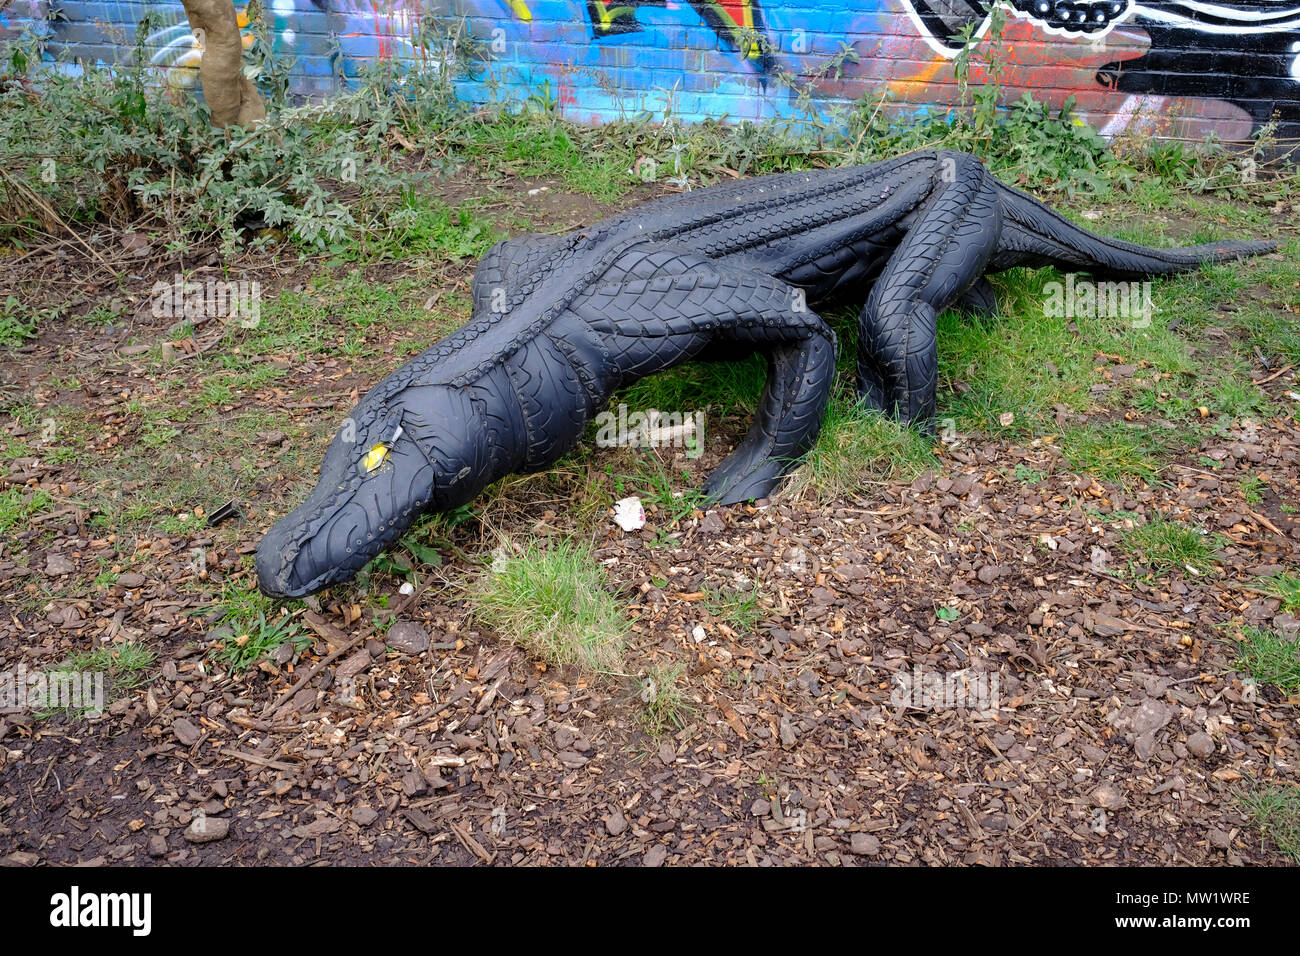 Un crocodile sculpture made out de pneus par artiste Annalisa Mandia à la communauté nomade jardin en Brick Lane à Shoreditch, East London, UK. Banque D'Images